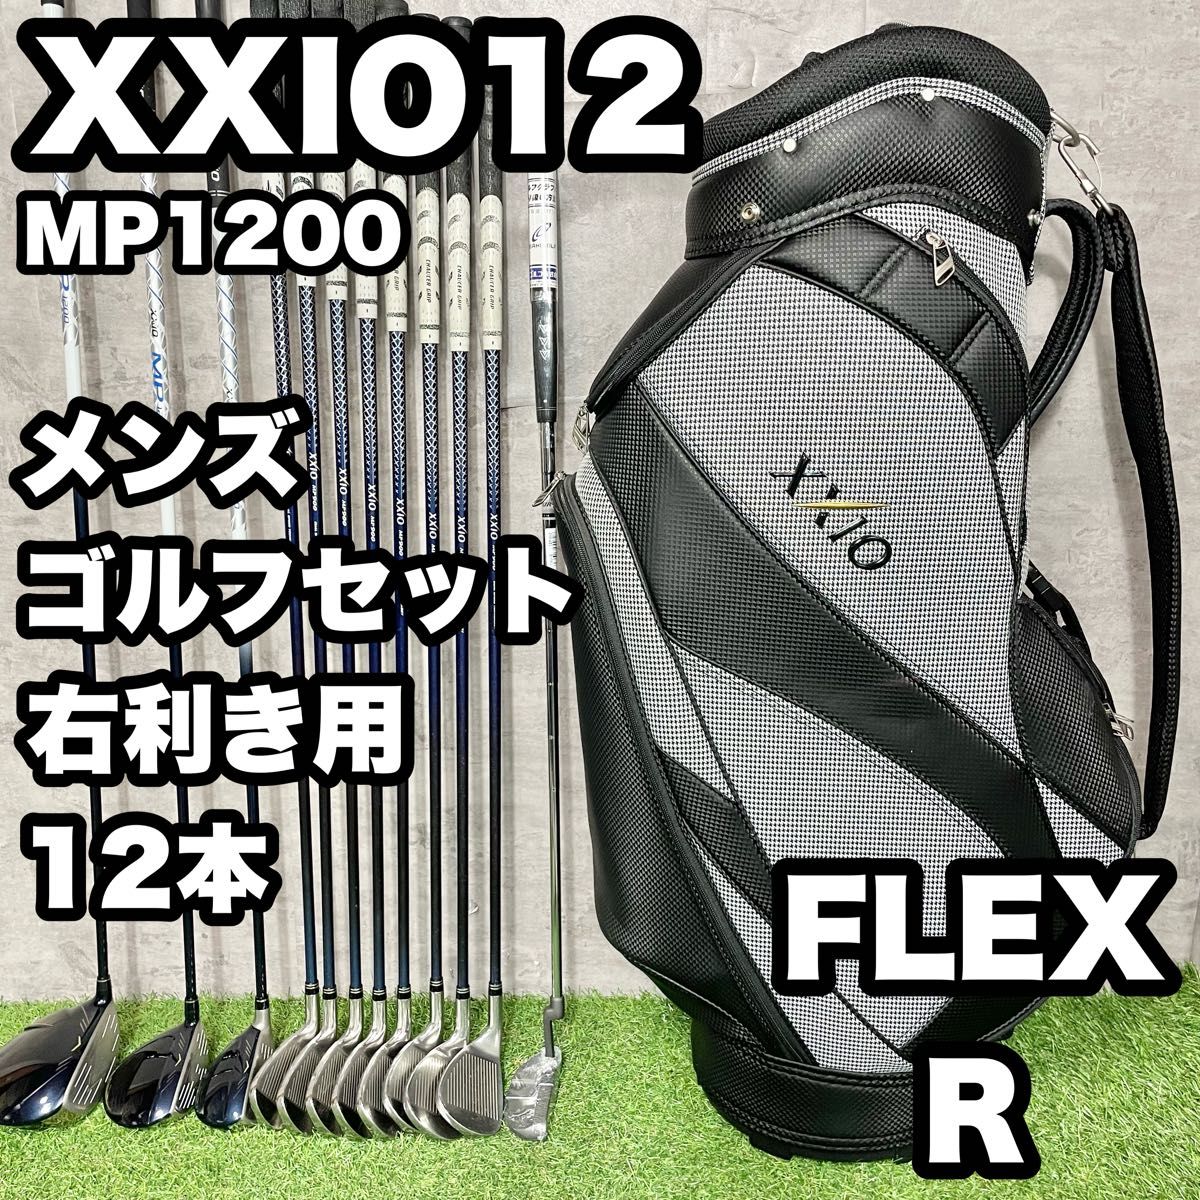 【大人気】XXIO12 MP1200 ゴルフクラブセット メンズ R 12本 右